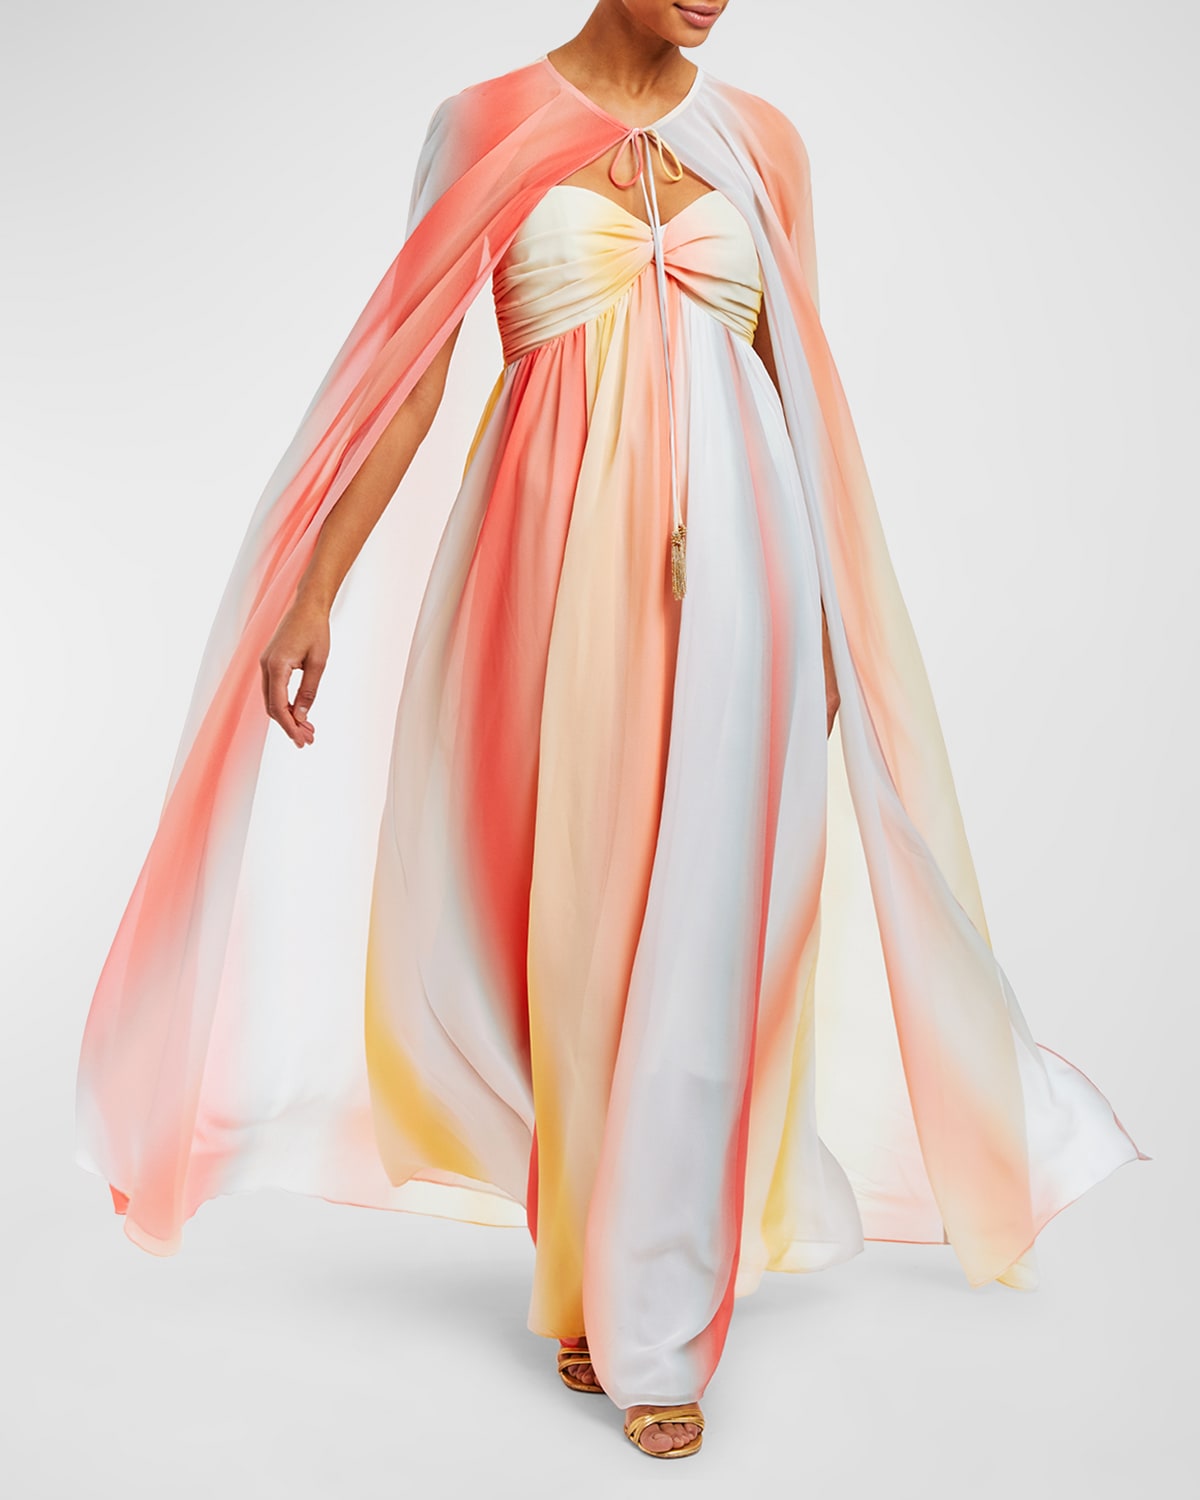 Margarita Strapless Ombre Chiffon Cape & Gown